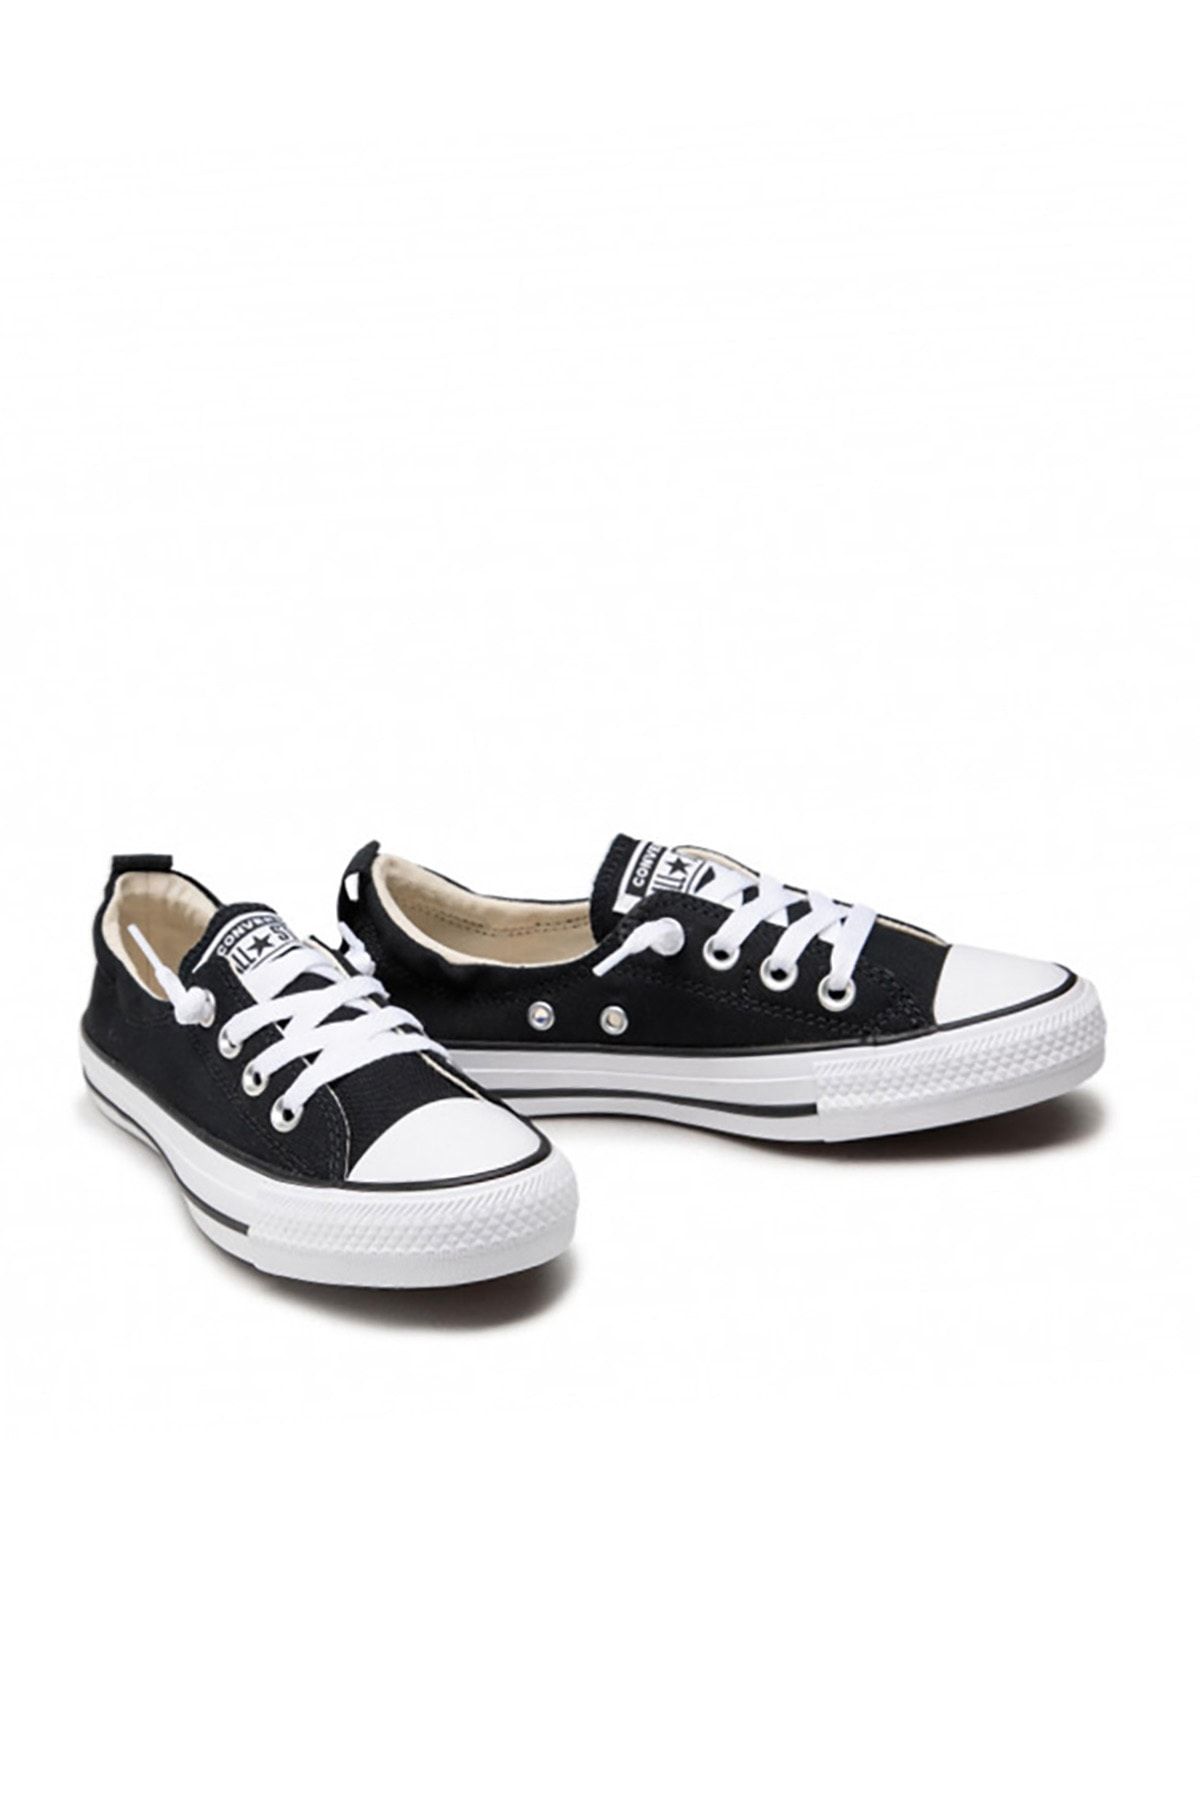 Converse Sneakers Black - Flat - Trendyol